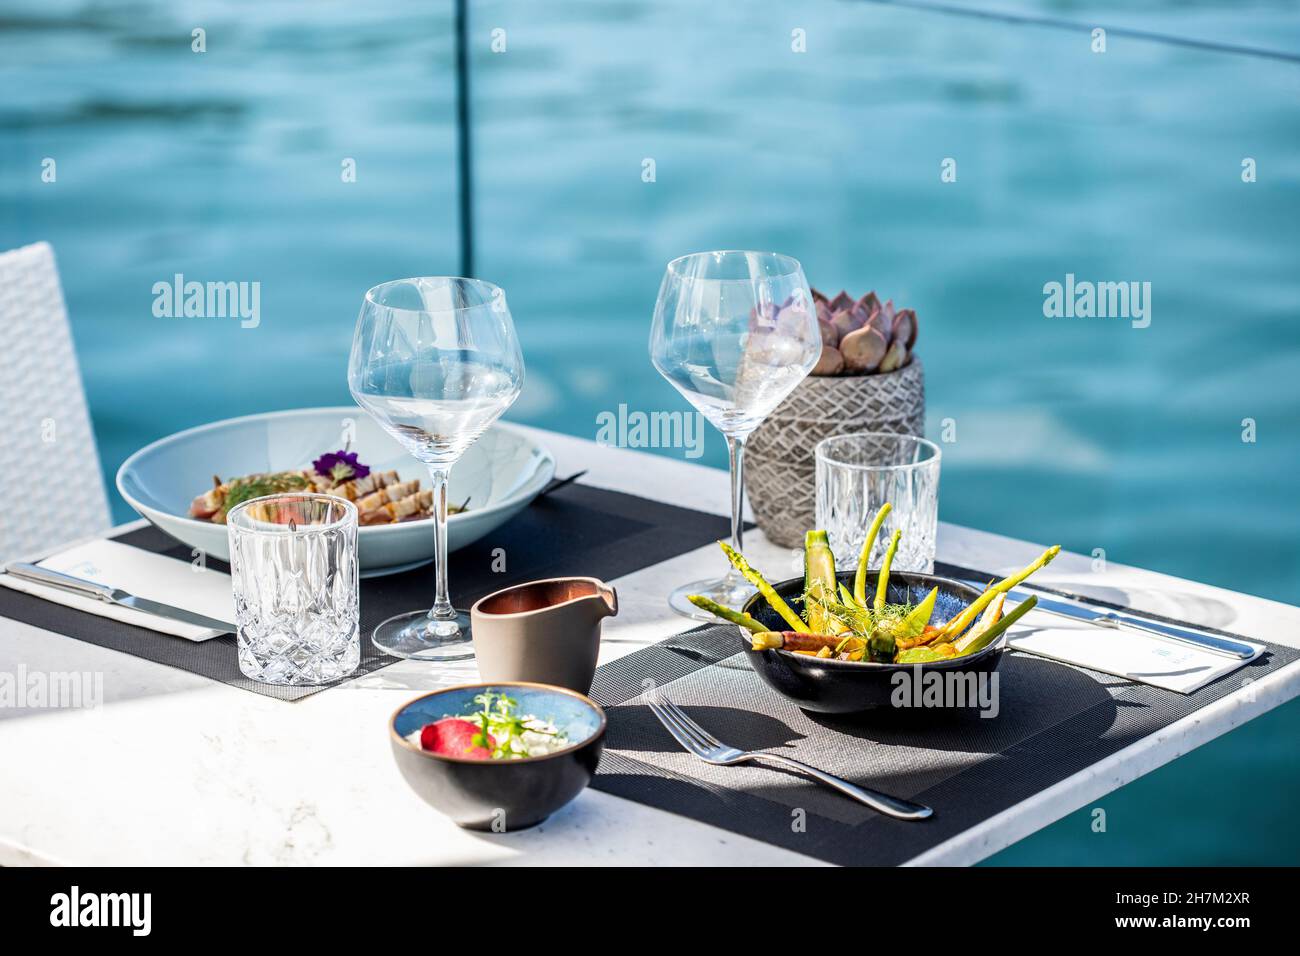 Cuisine asiatique et place sur la table au bord de l'eau Banque D'Images